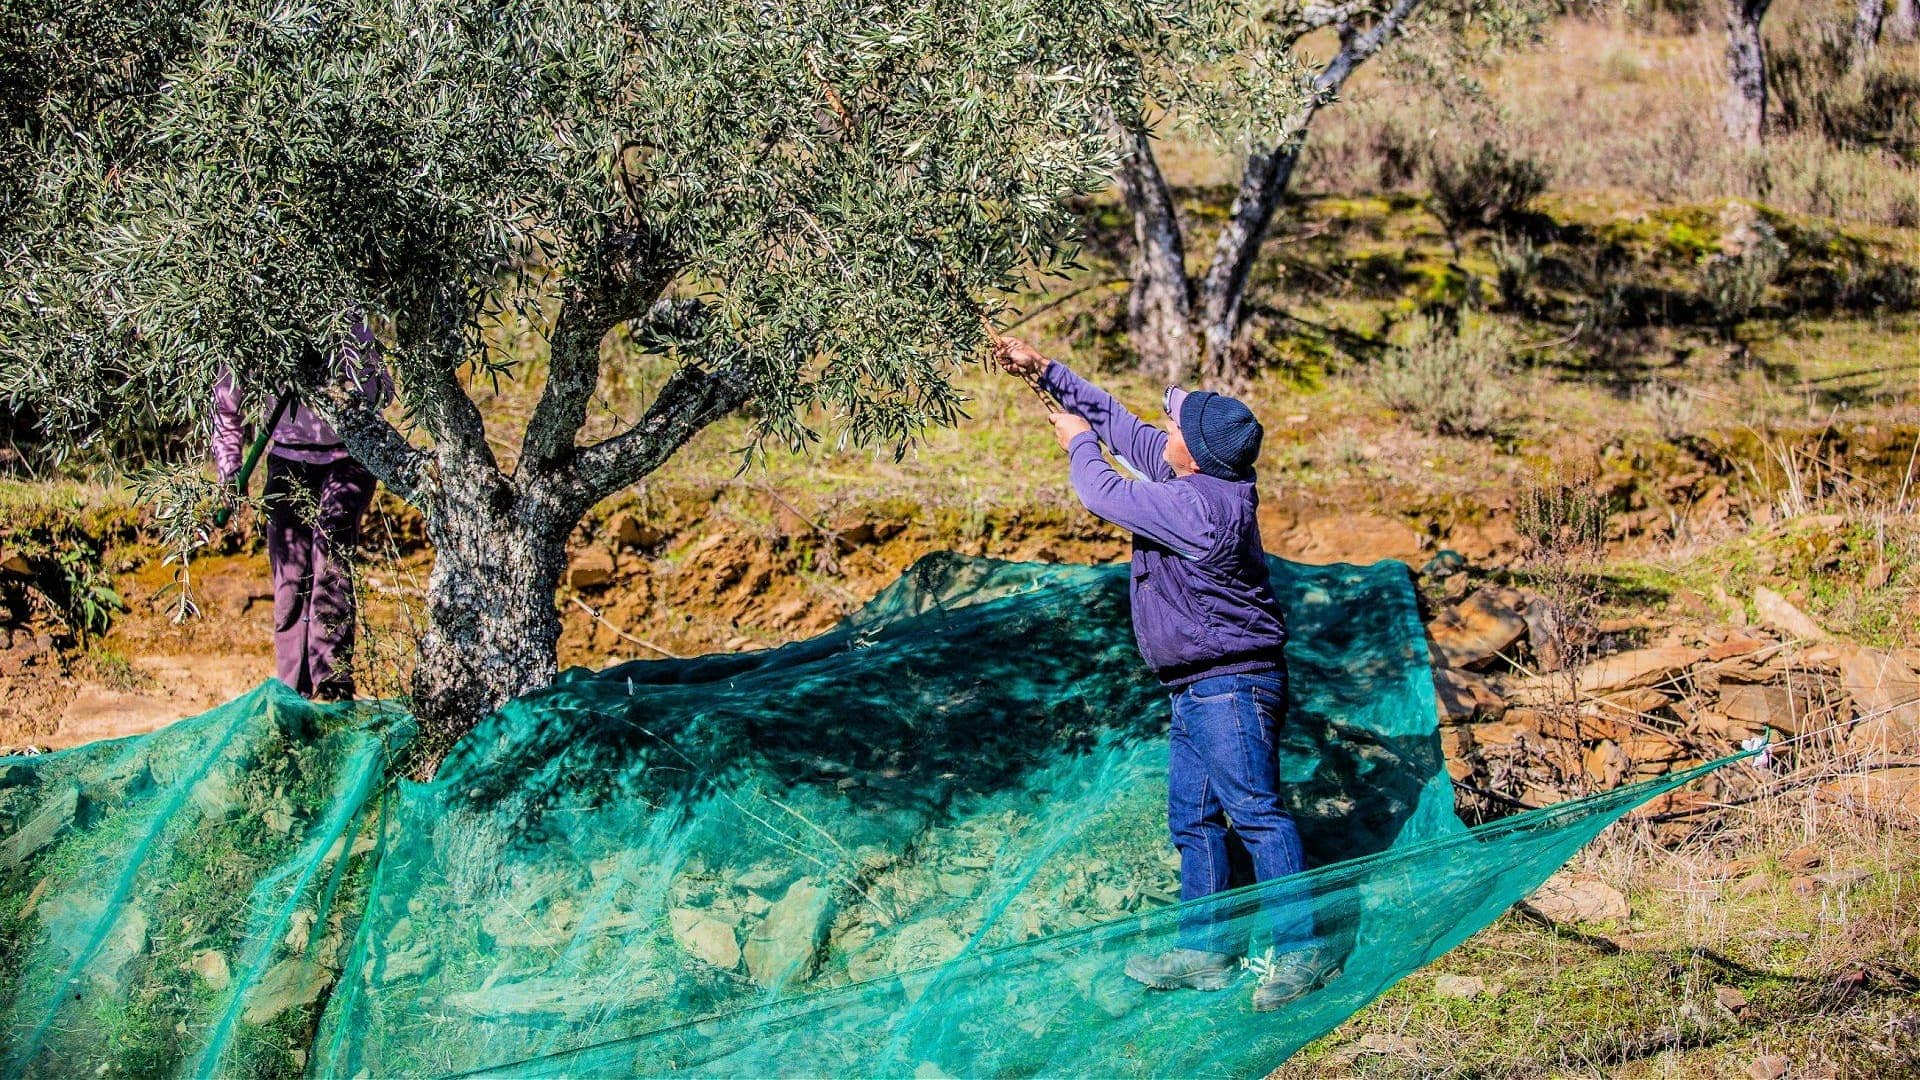 europa-produktionsgeschaeft-olivenoelproduktion-in-portugal-einbruch-nach-rekordjahr-olivenoelzeiten